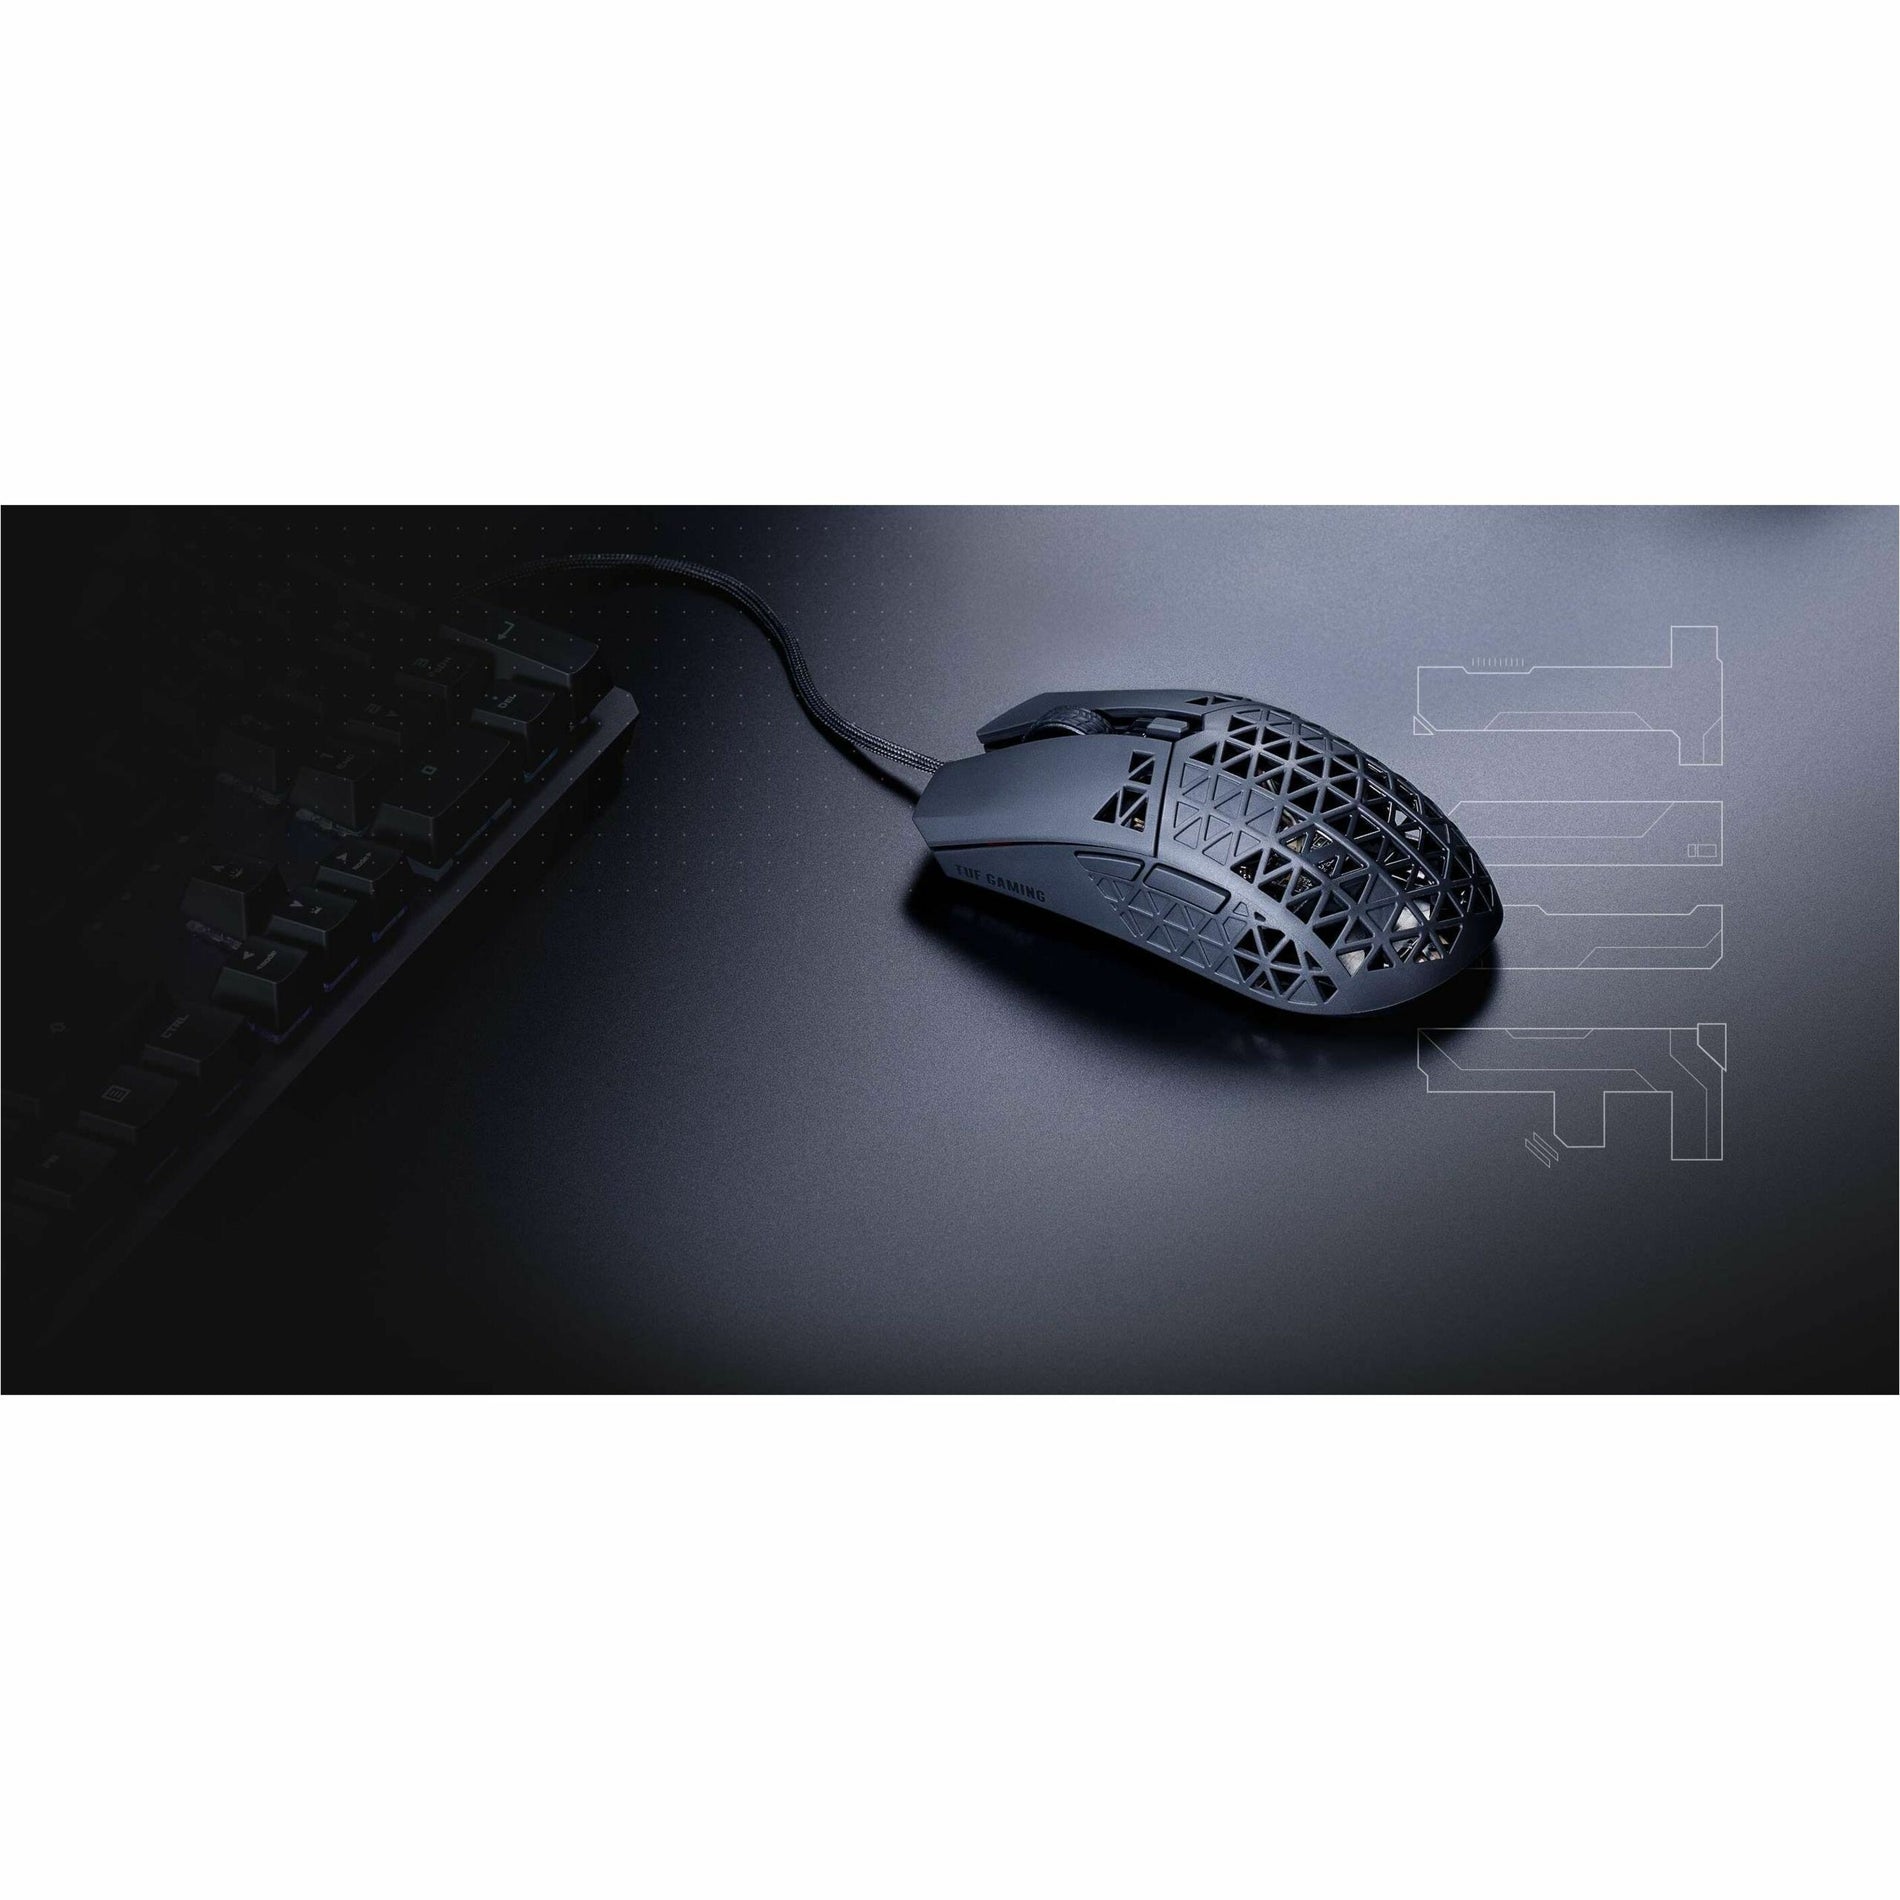 Asus TUF M4 Air Gaming Mouse (P307 TUF GAMING M4 AIR)